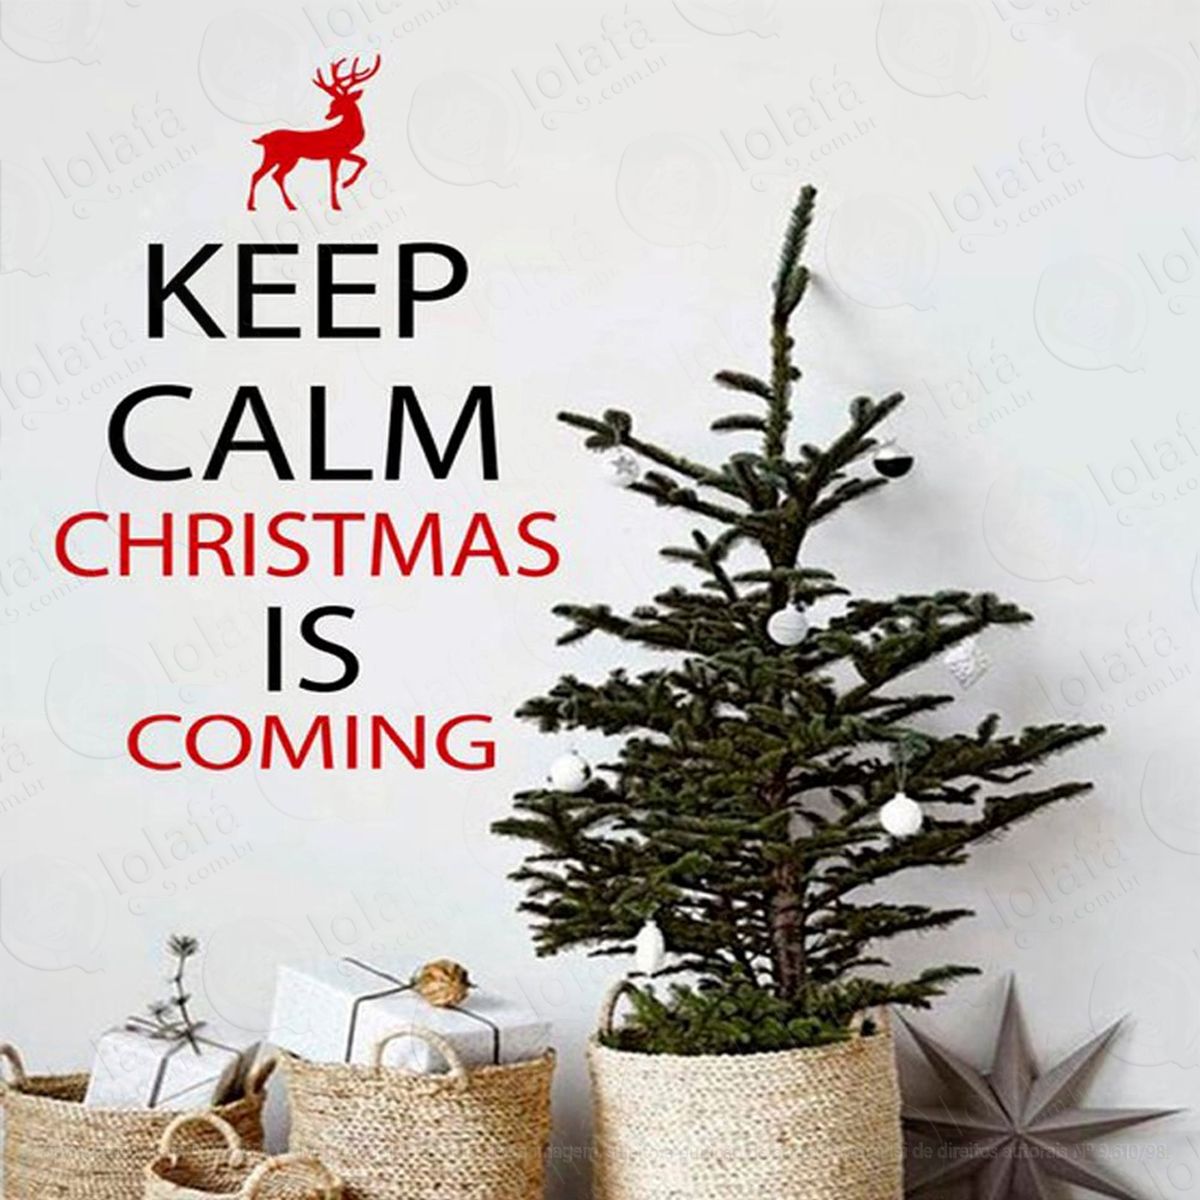 keep calm adesivo de natal para vitrine, parede, porta de vidro - decoração natalina mod:122